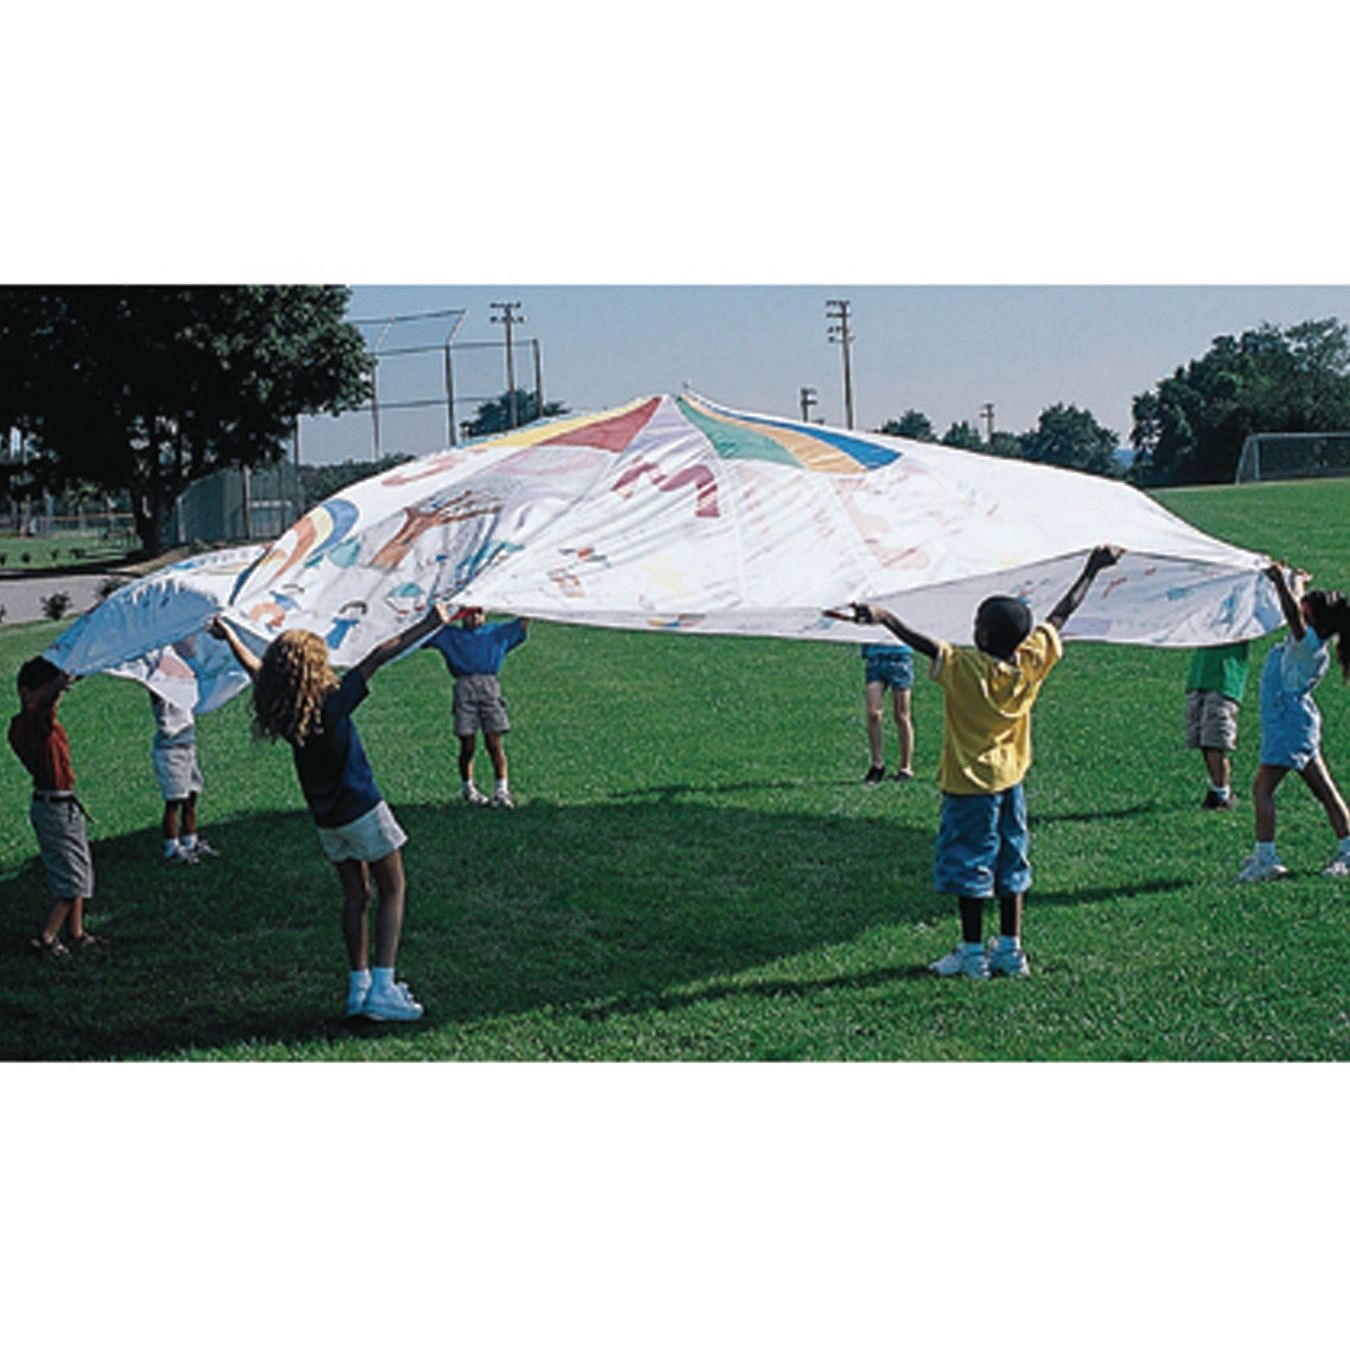 6 Color-Me Playchutes Parachute 